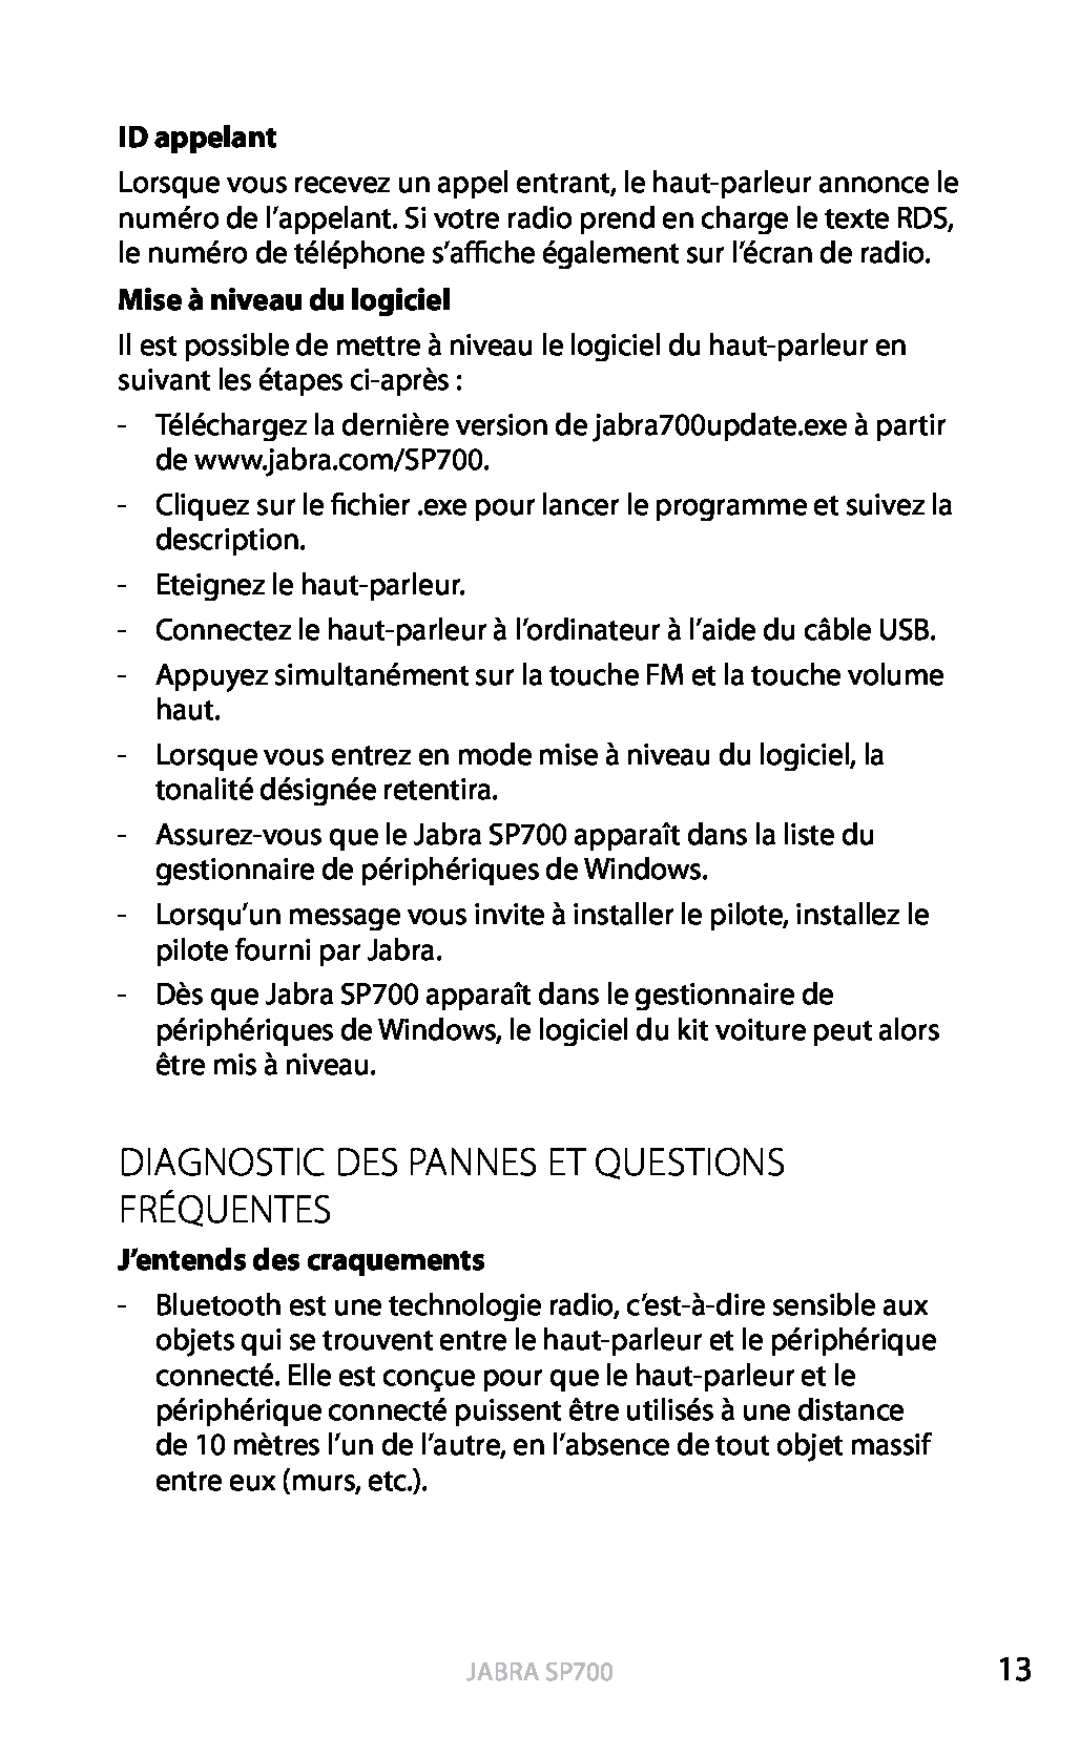 Jabra SP700 user manual Diagnostic Des Pannes Et Questions Fréquentes, ID appelant, Mise à niveau du logiciel, Français 